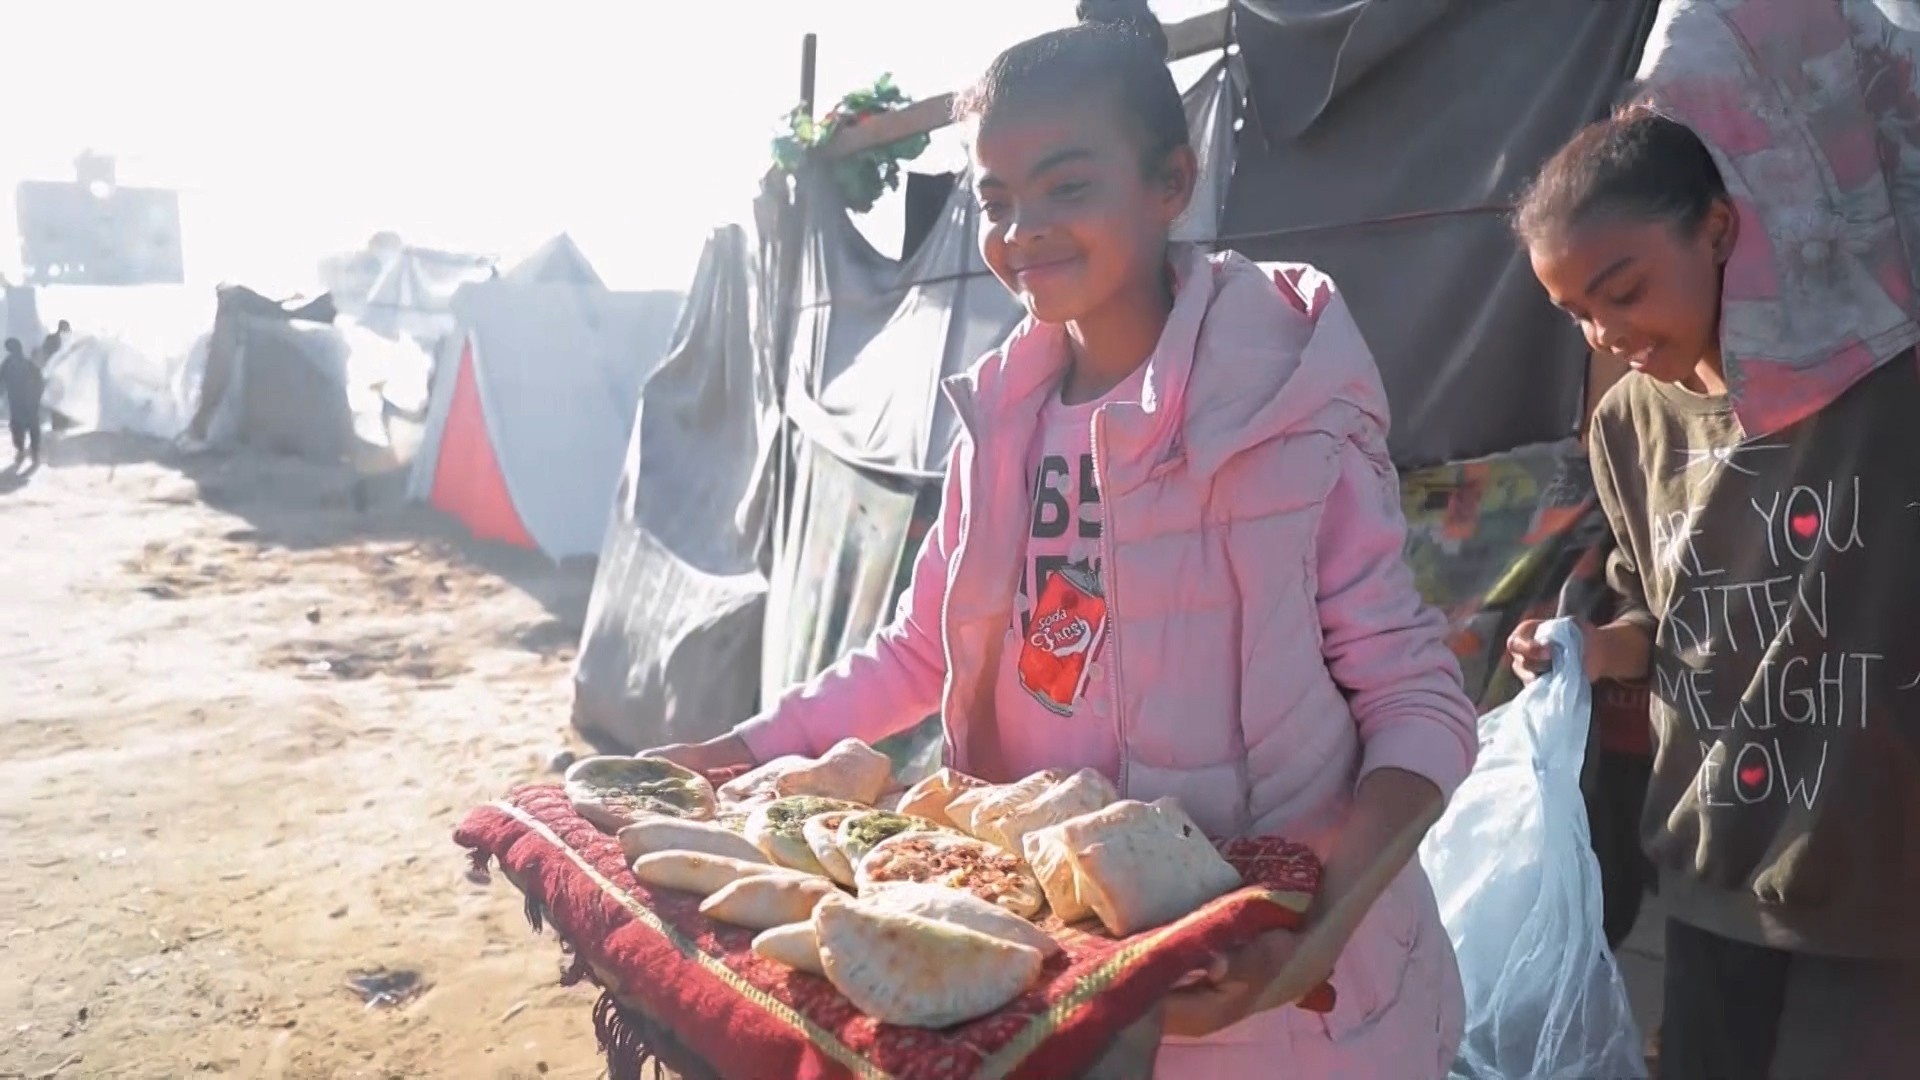 الحرب تجبر أطفال غزة على العمل لإعالة أسرهم | التقارير الإخبارية – البوكس نيوز